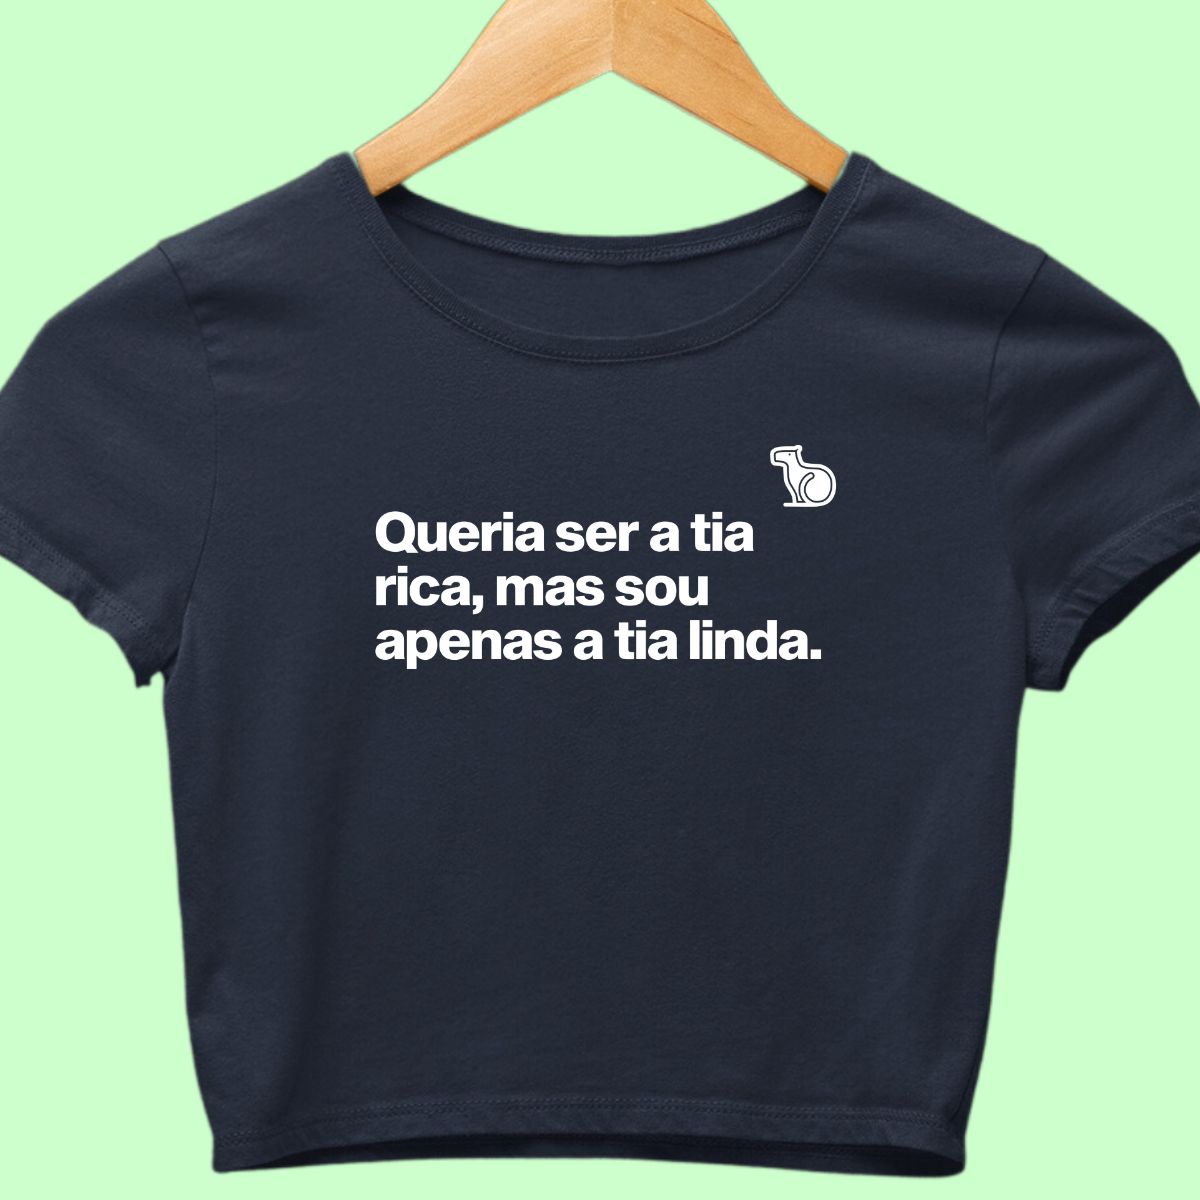 Camiseta cropped com a frase "Queria ser a tia rica, mas sou apenas a tia linda." azul.